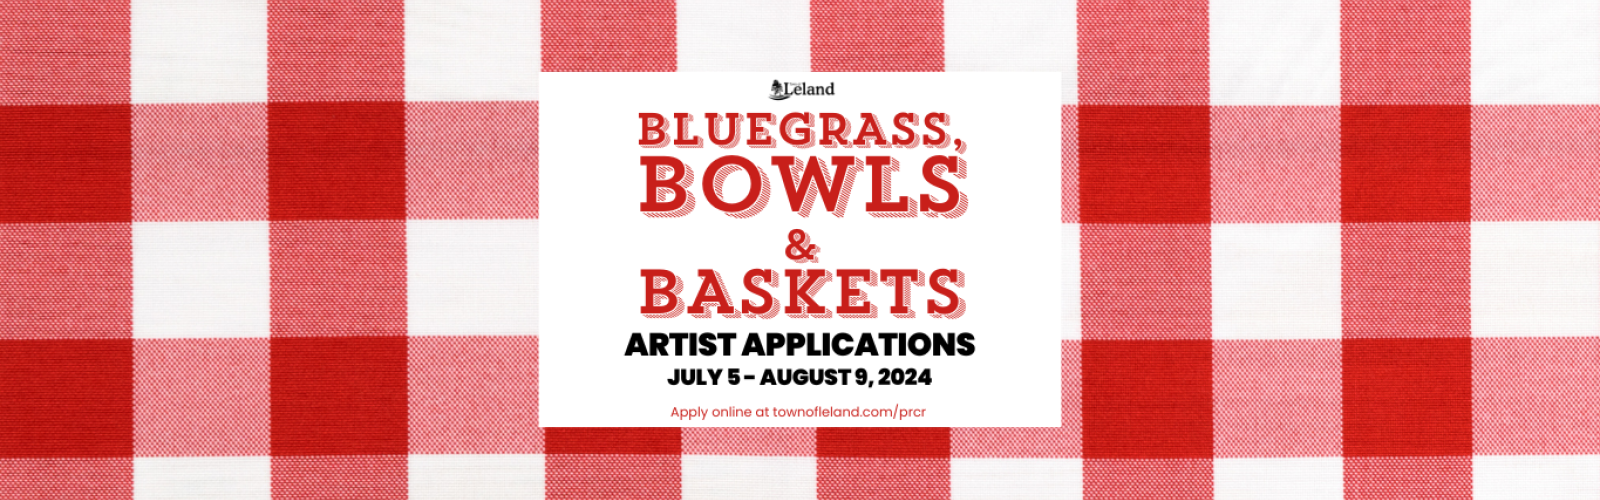 Bluegrass Bowls and Baskets Banner